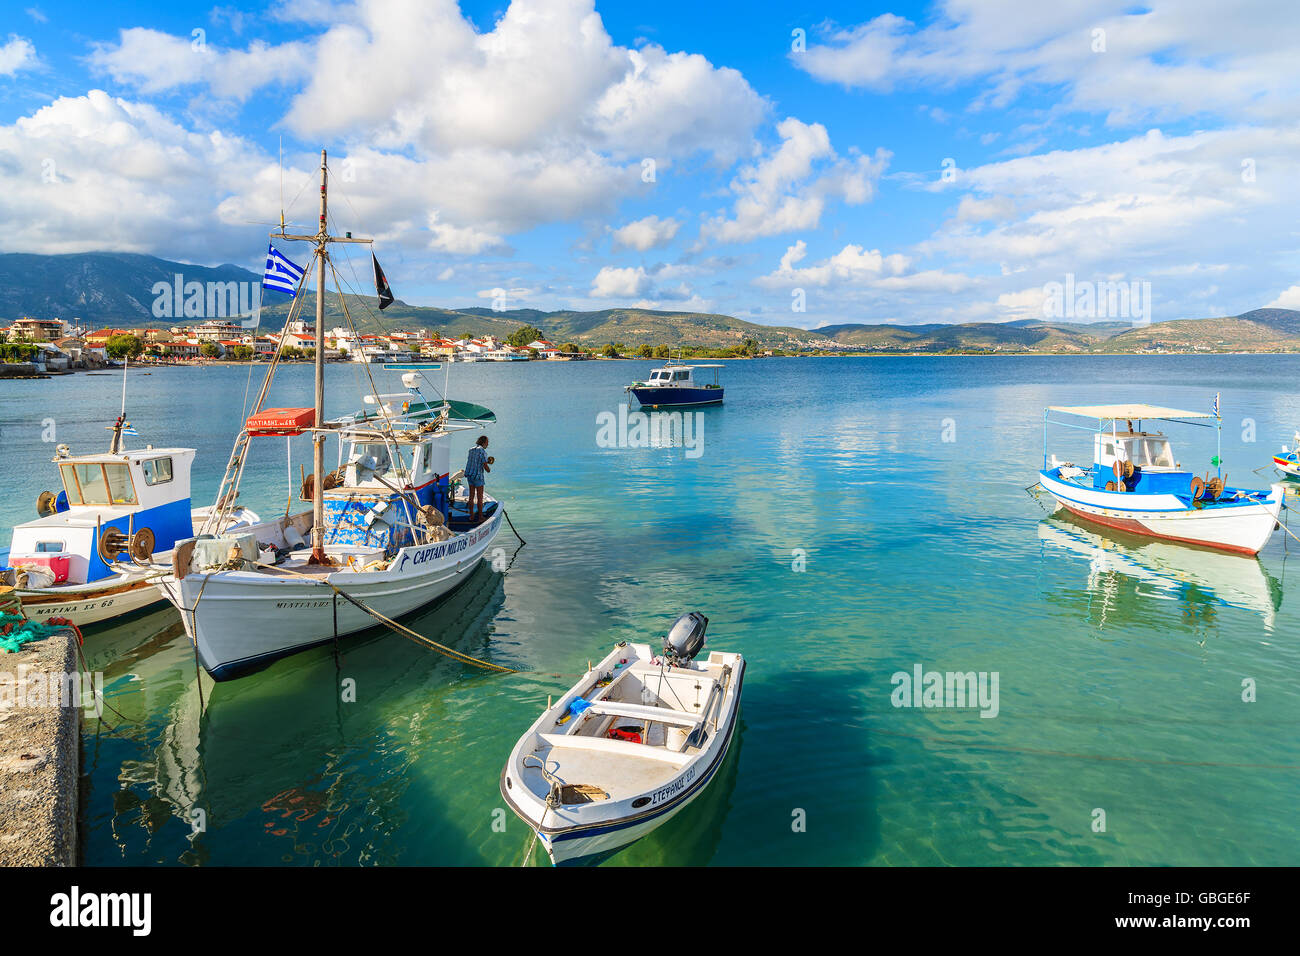 L'île de Samos, Grèce - Sep 23, 2015 : l'article sur la pêche pêcheur grec amarrage bateau à port sur l'île de Samos, Grèce. Banque D'Images